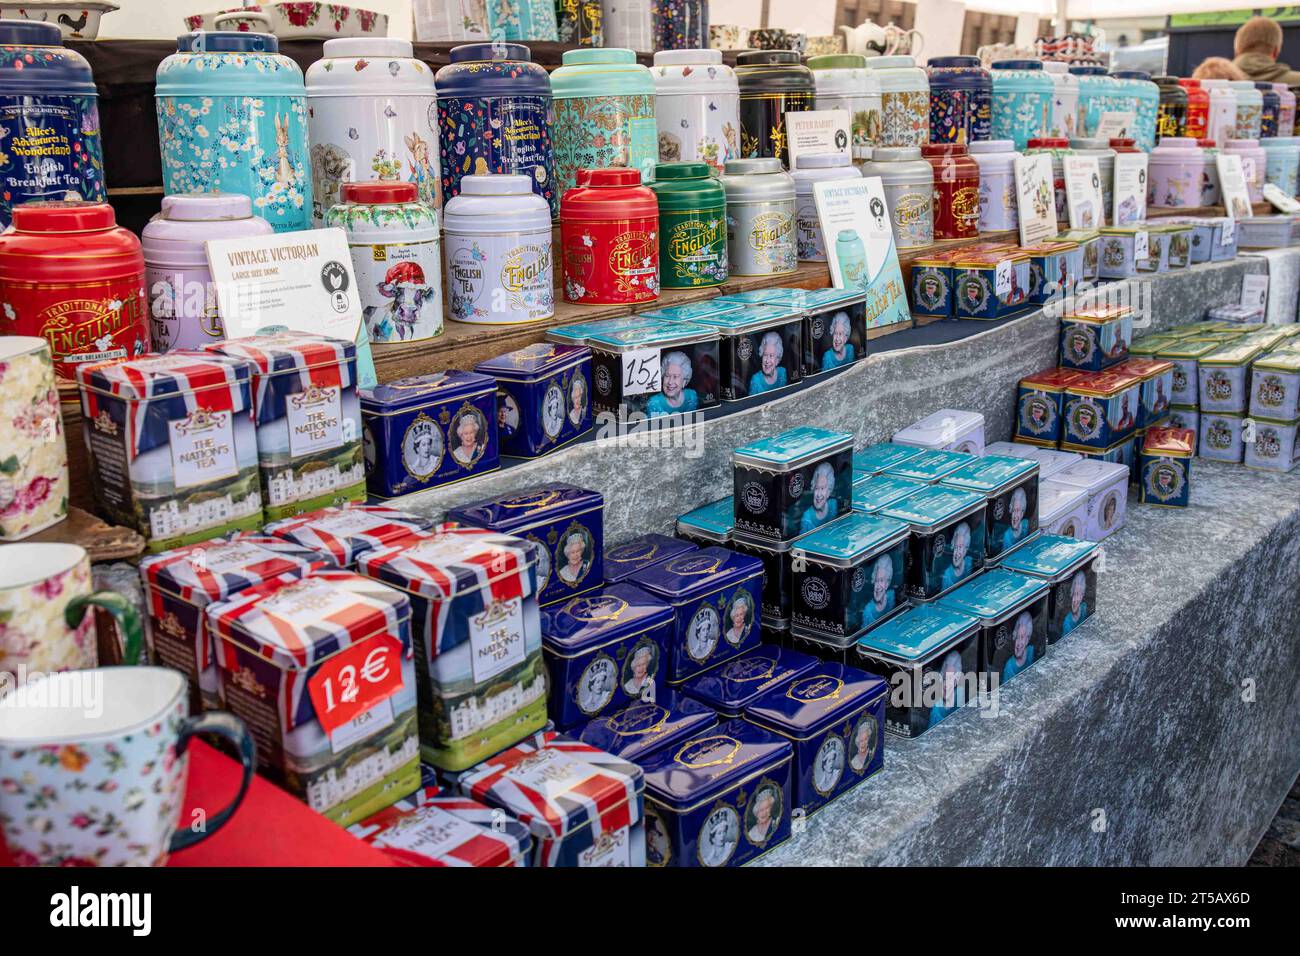 Verschiedene Teedosen zum Verkauf im Kansainväliset suurmarkkinat oder International Grand Market in Helsinki, Finnland Stockfoto